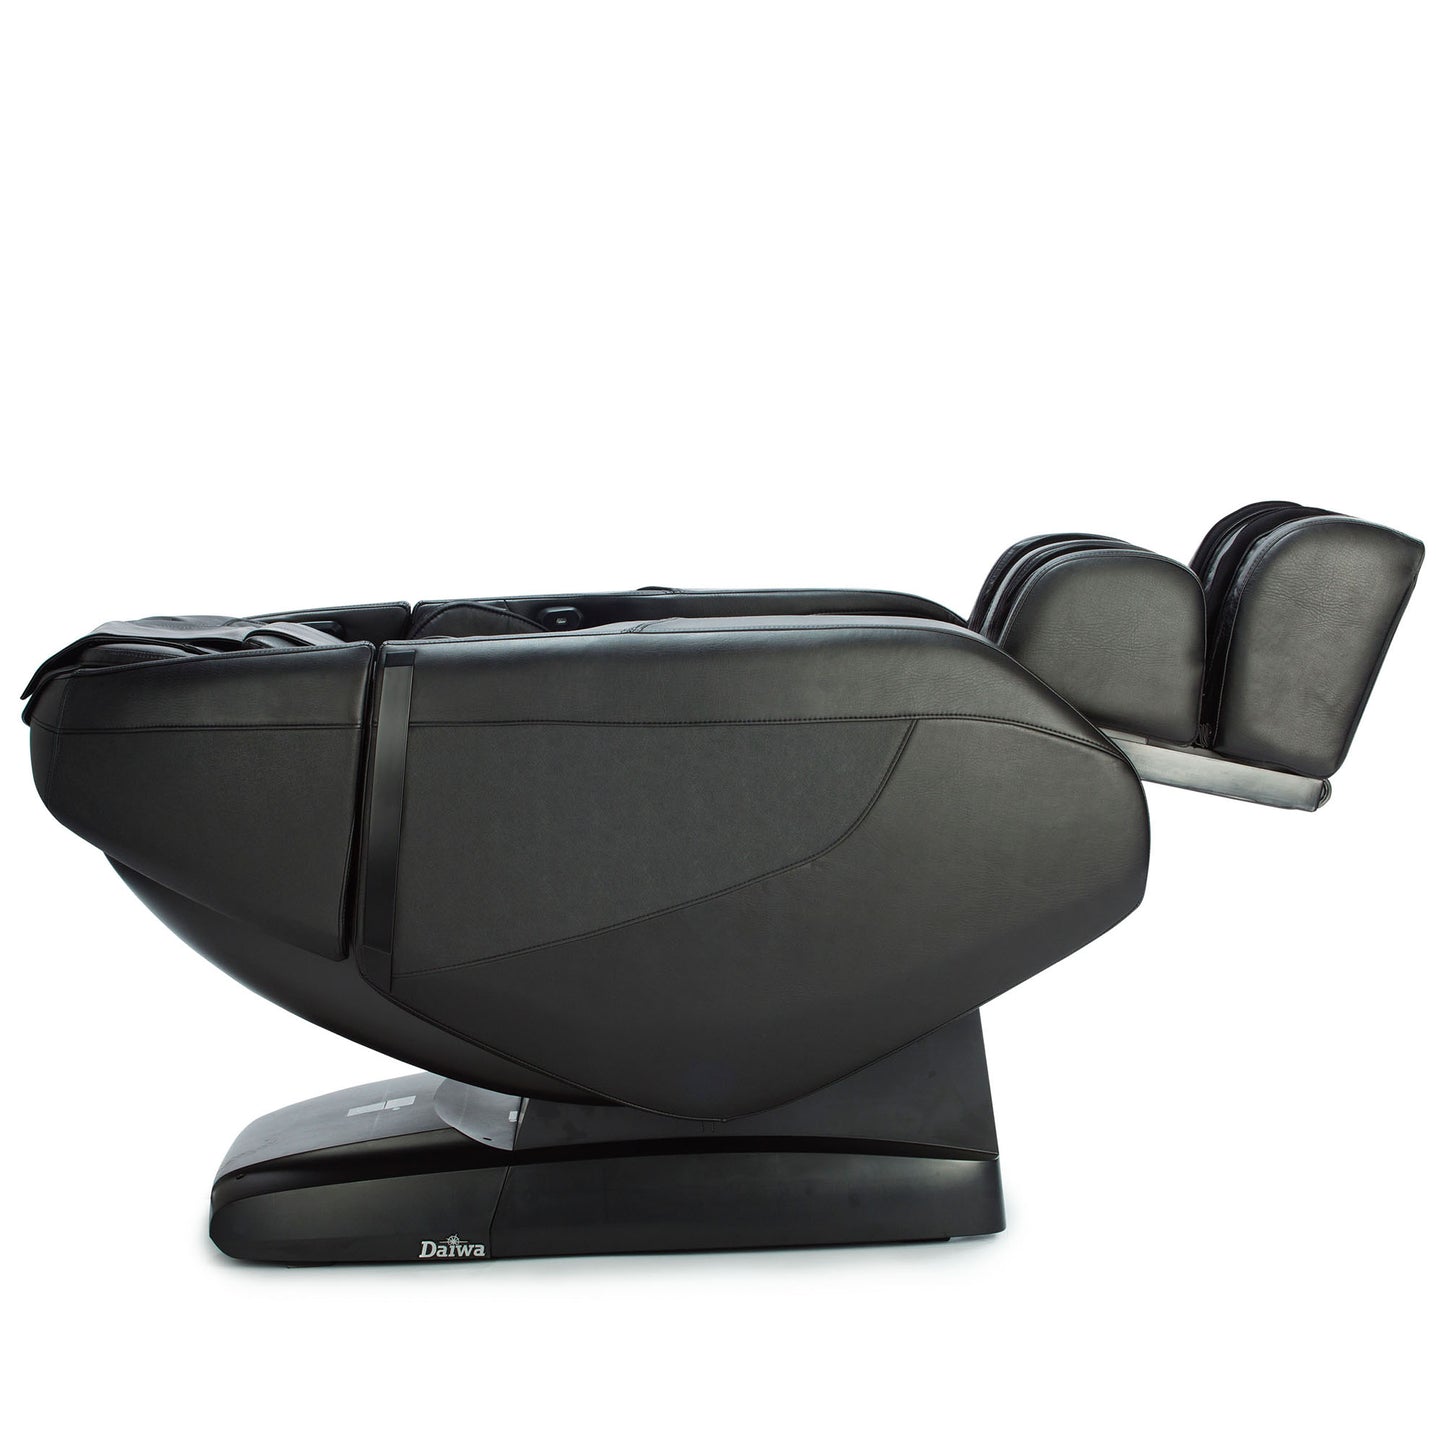 Daiwa Solace Massage Chair